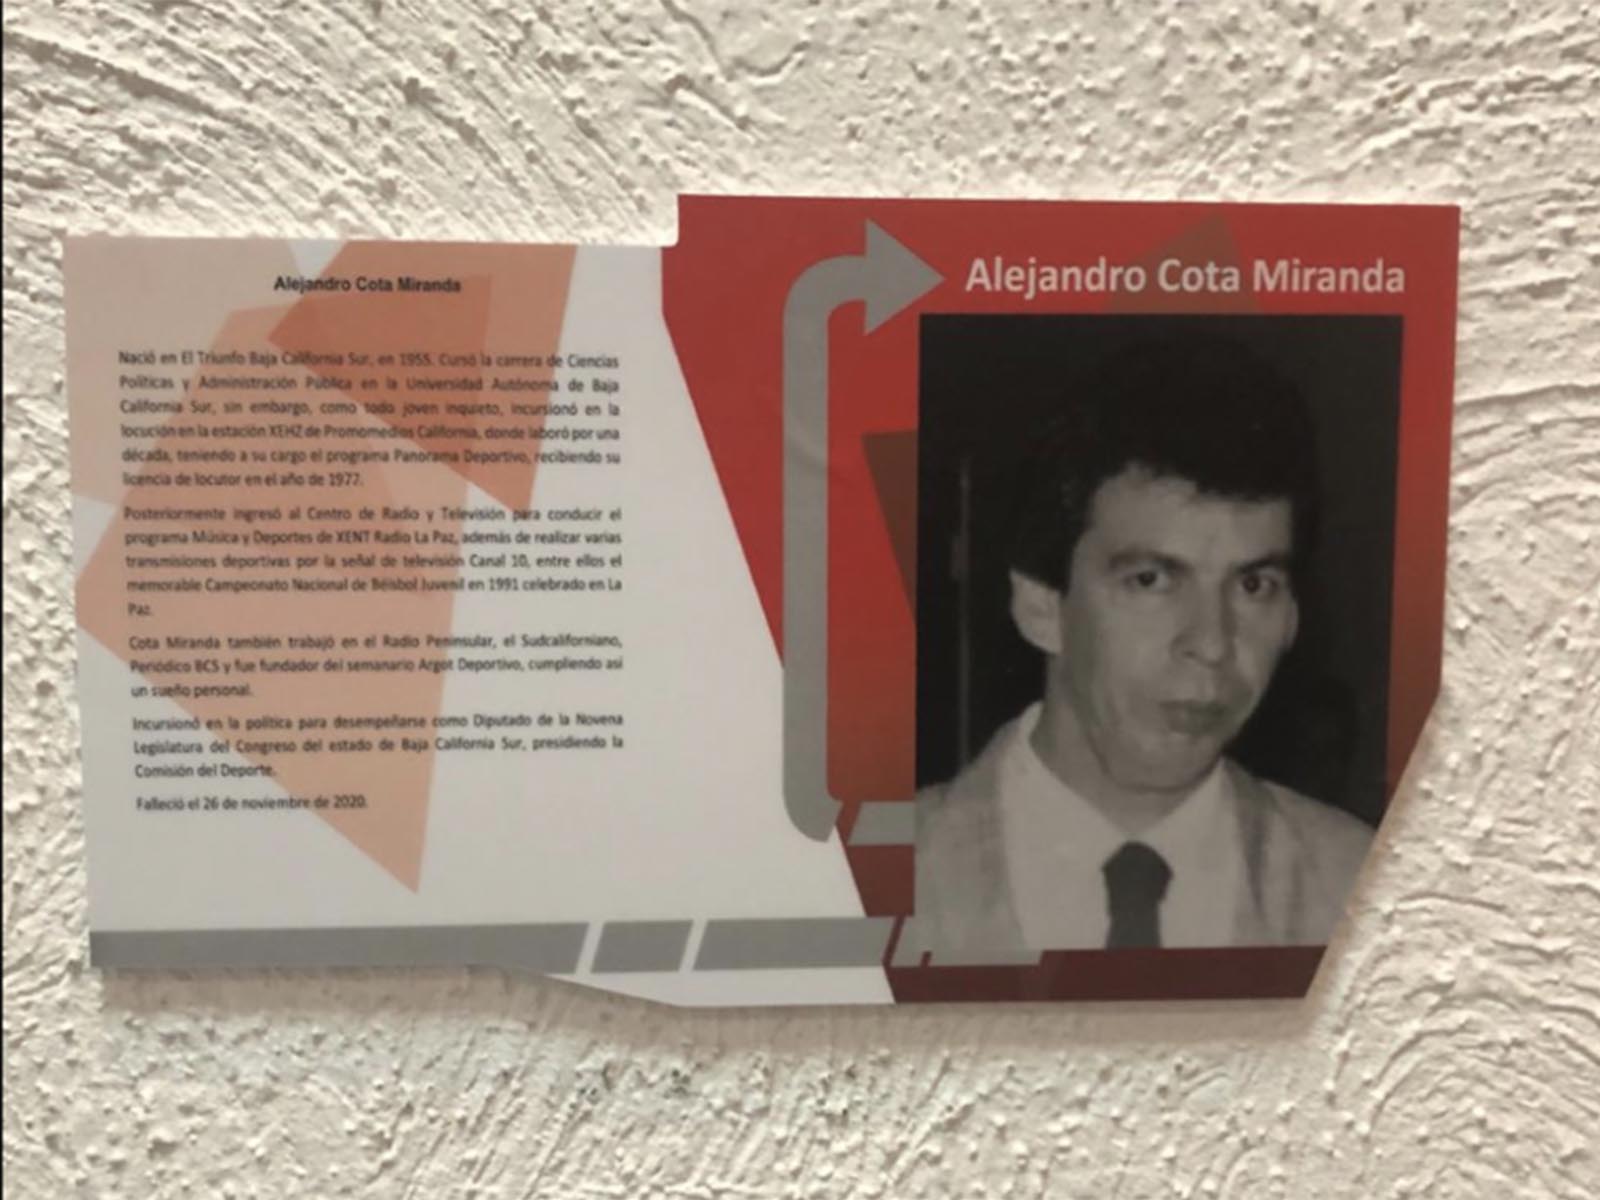 Alejandro Cota Miranda ingresa al salón de la fama